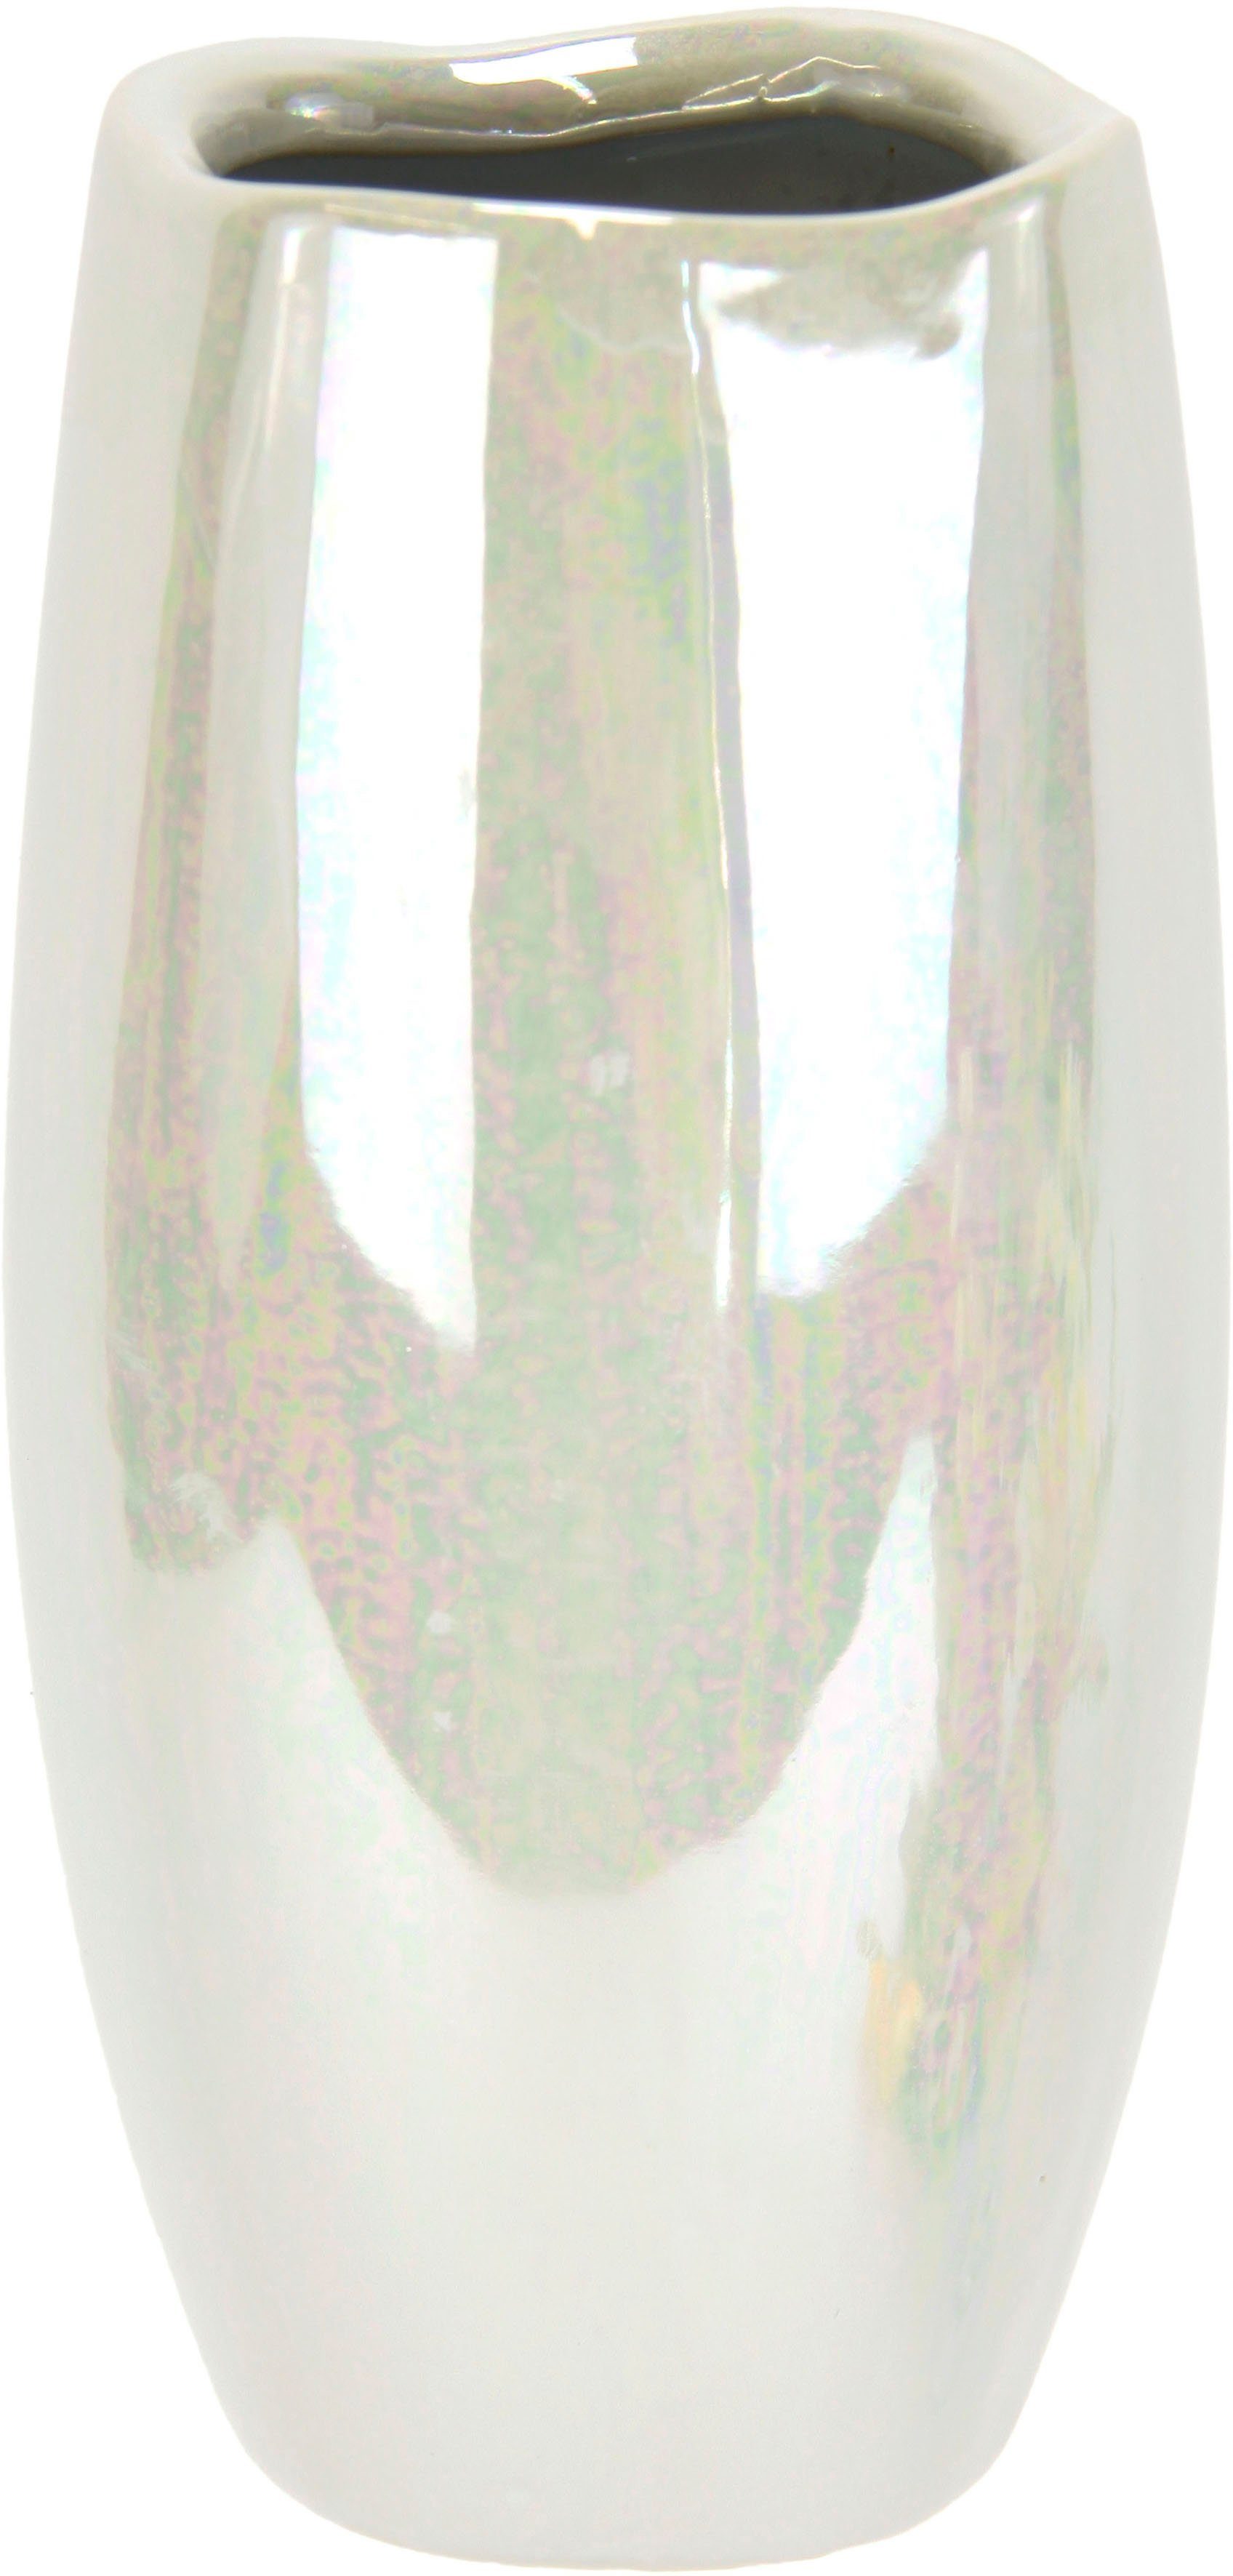 I.GE.A. Dekovase Dekovase, Bodenvase Perlmuttglanz Pampasgras Keramik Zylinder glänzend weiß